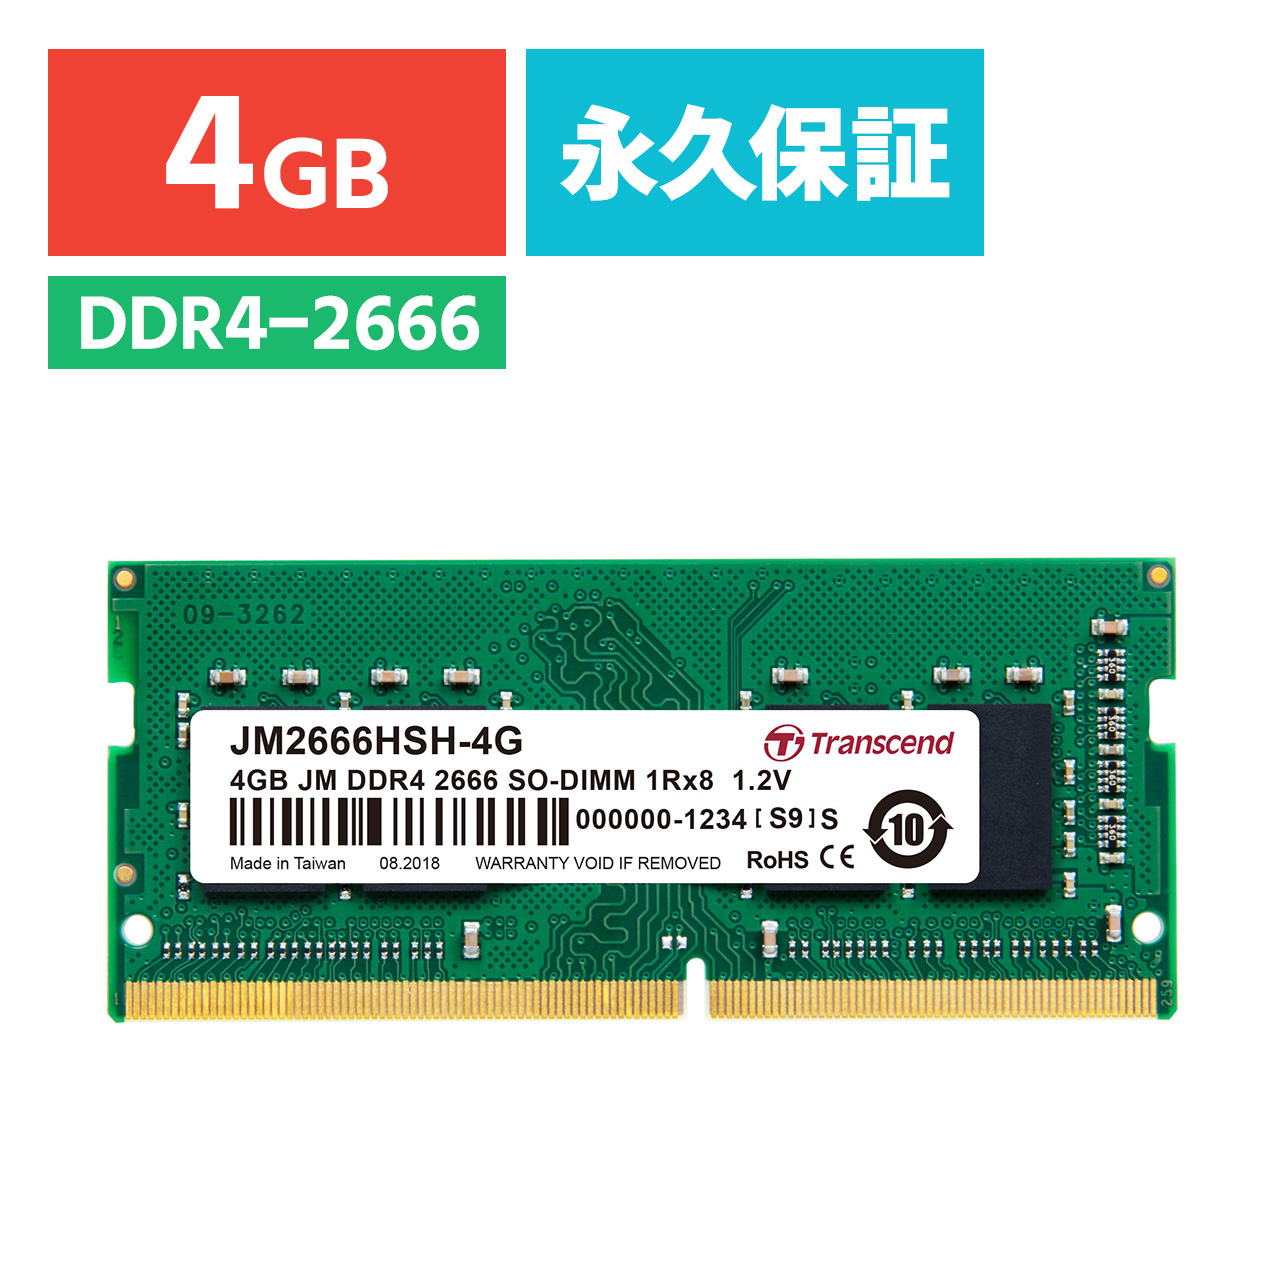 テクミヨ ノートPC用メモリPC4-21300 DDR4-2666 16GBx2PCパーツ